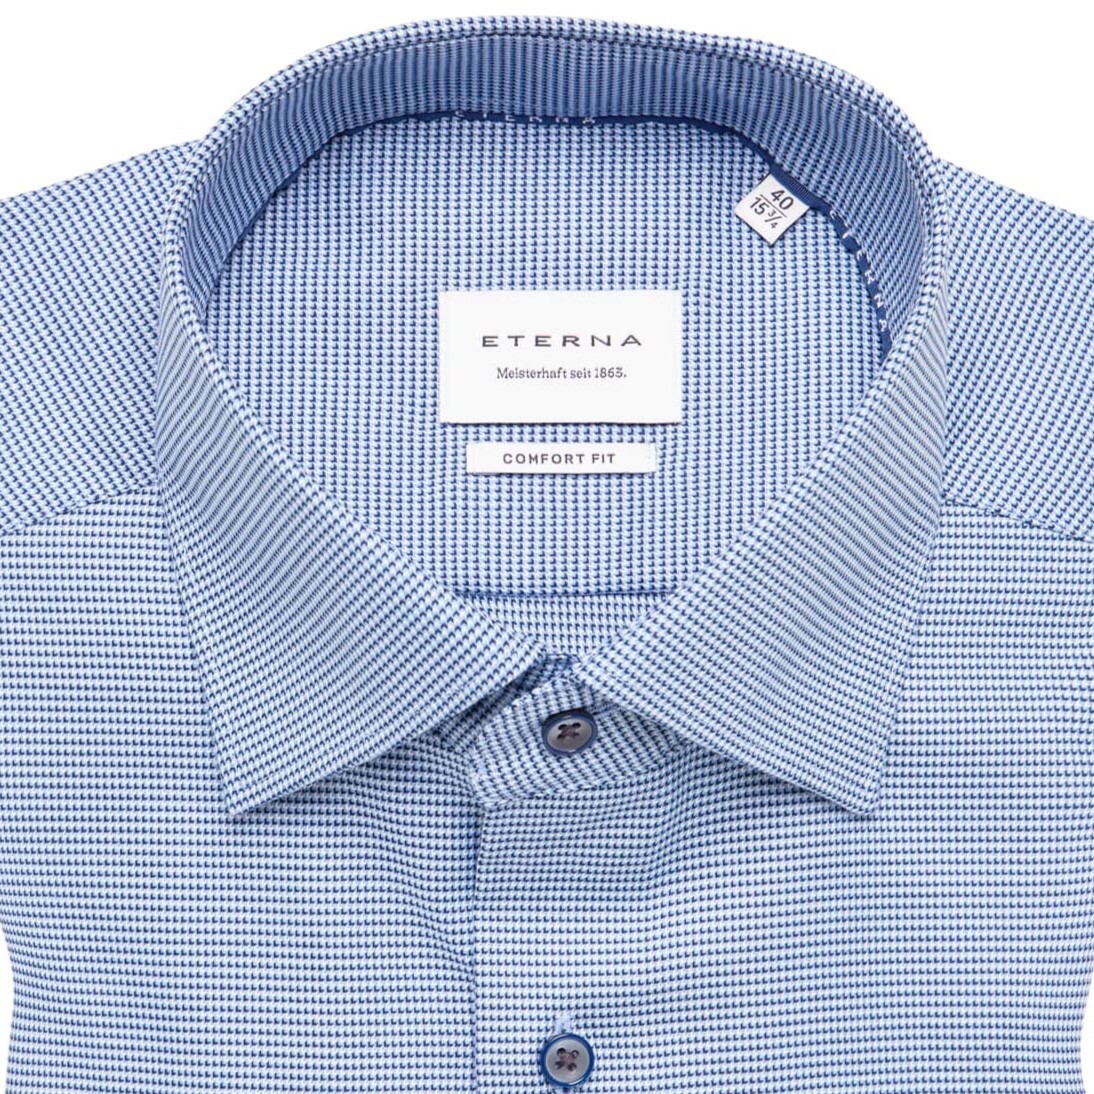 Сорочка мужская Eterna Comfort Fit 4158-E19K-14 из фактурной ткани в синей гамме